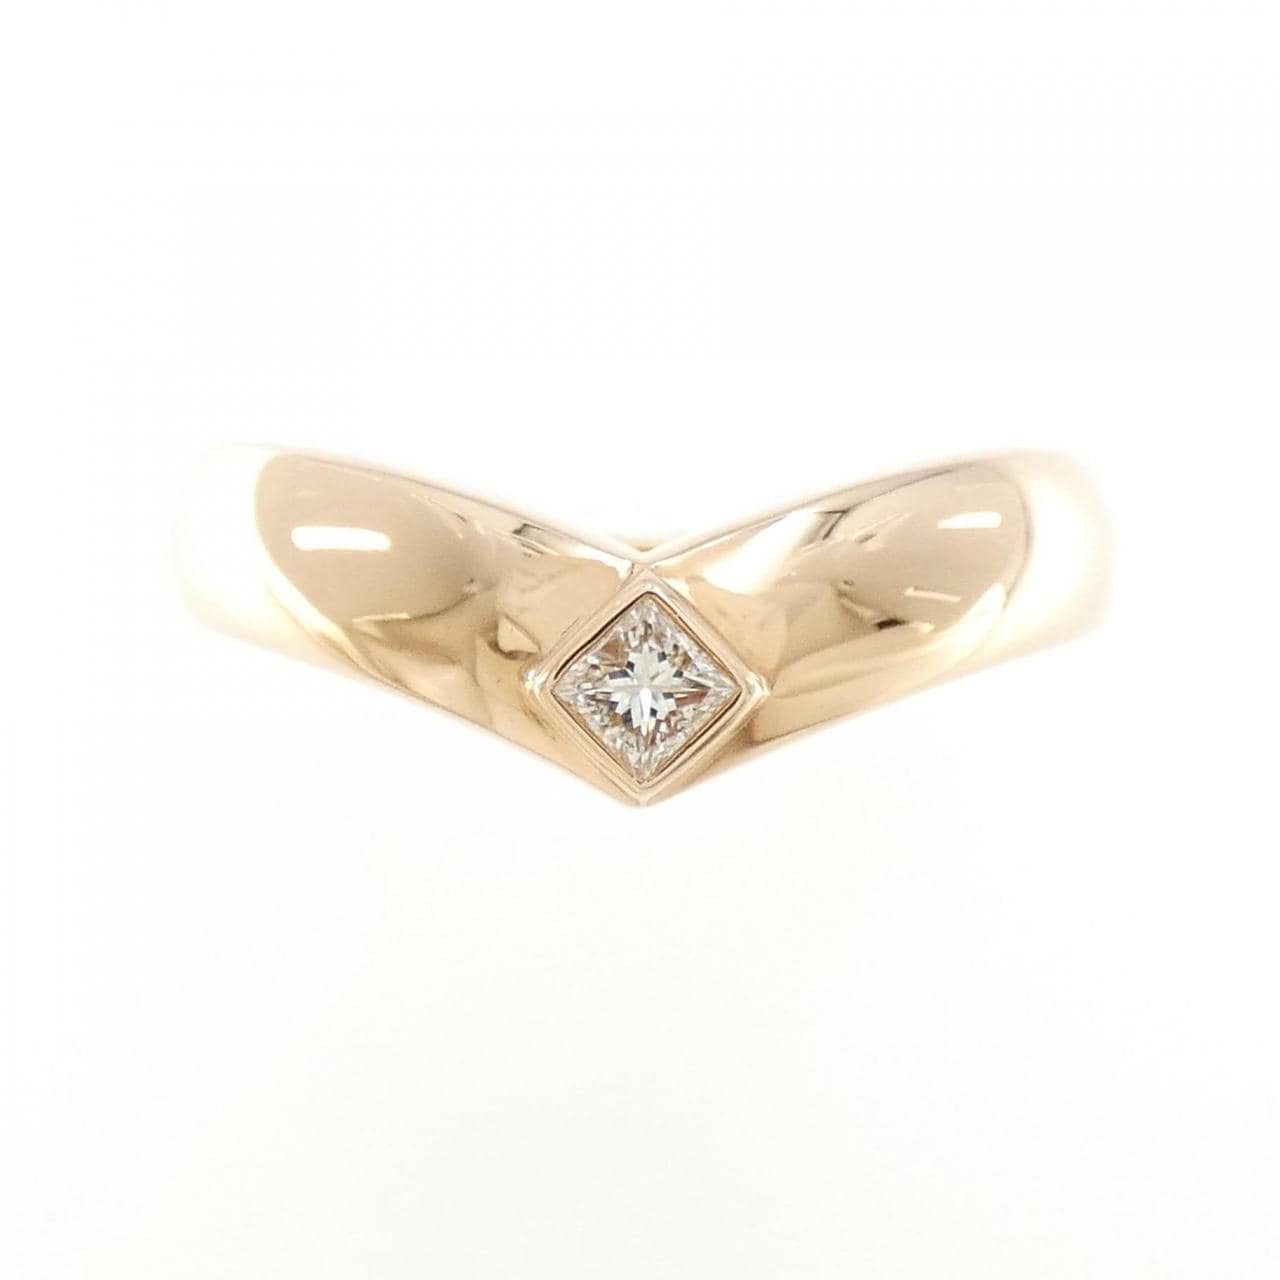 Cartier triandre ring